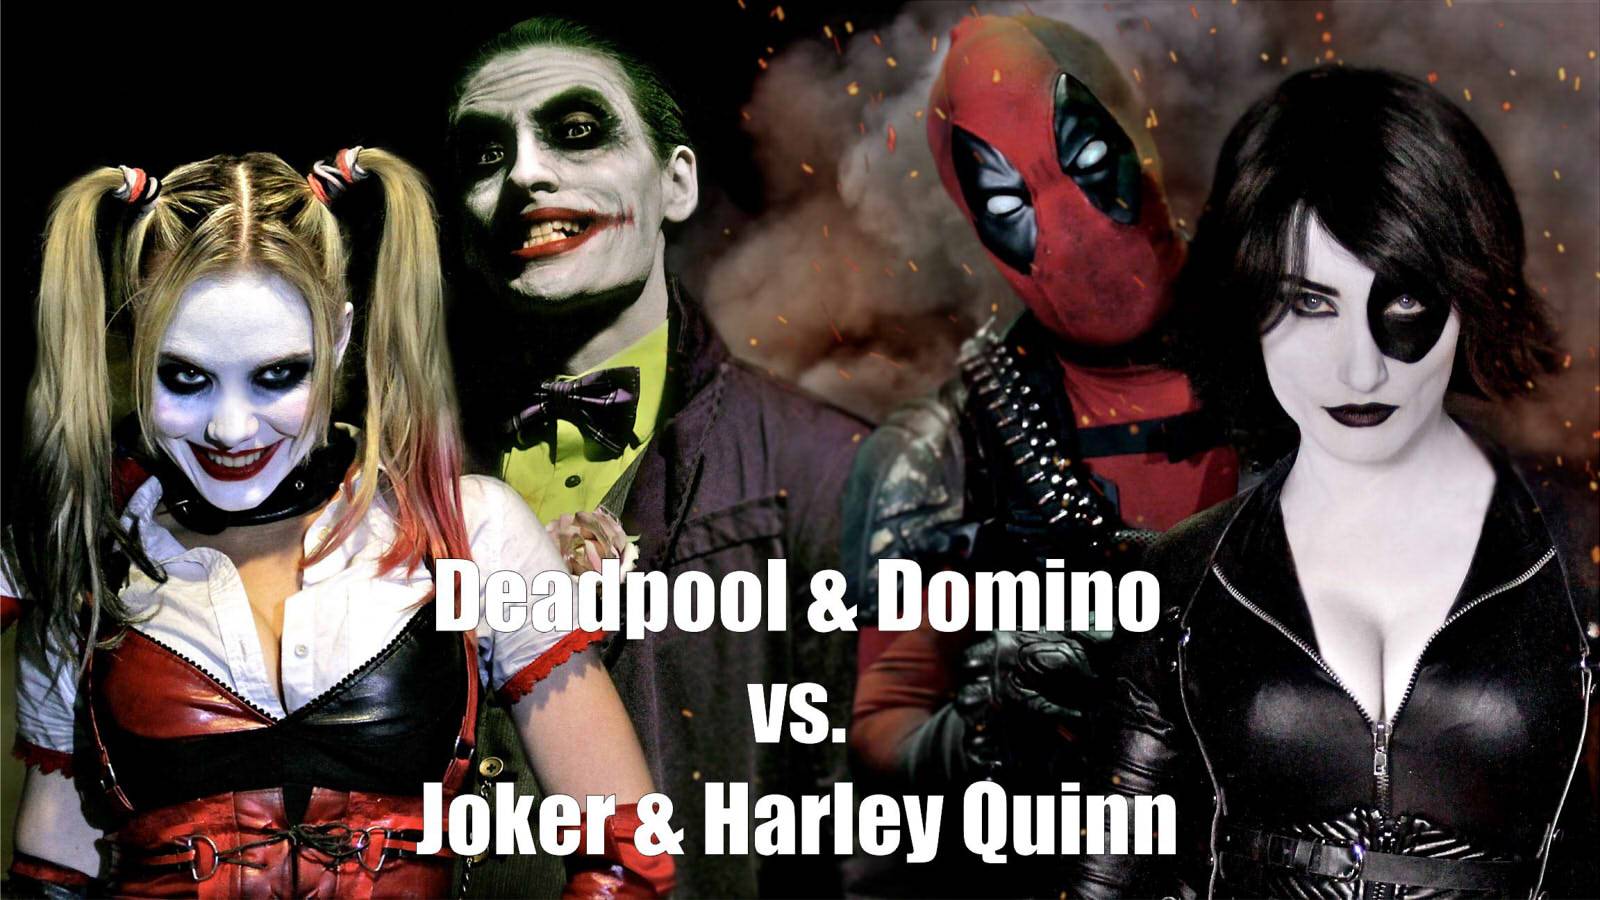 Deadpool & Domino vs. Joker & Harley Quinn